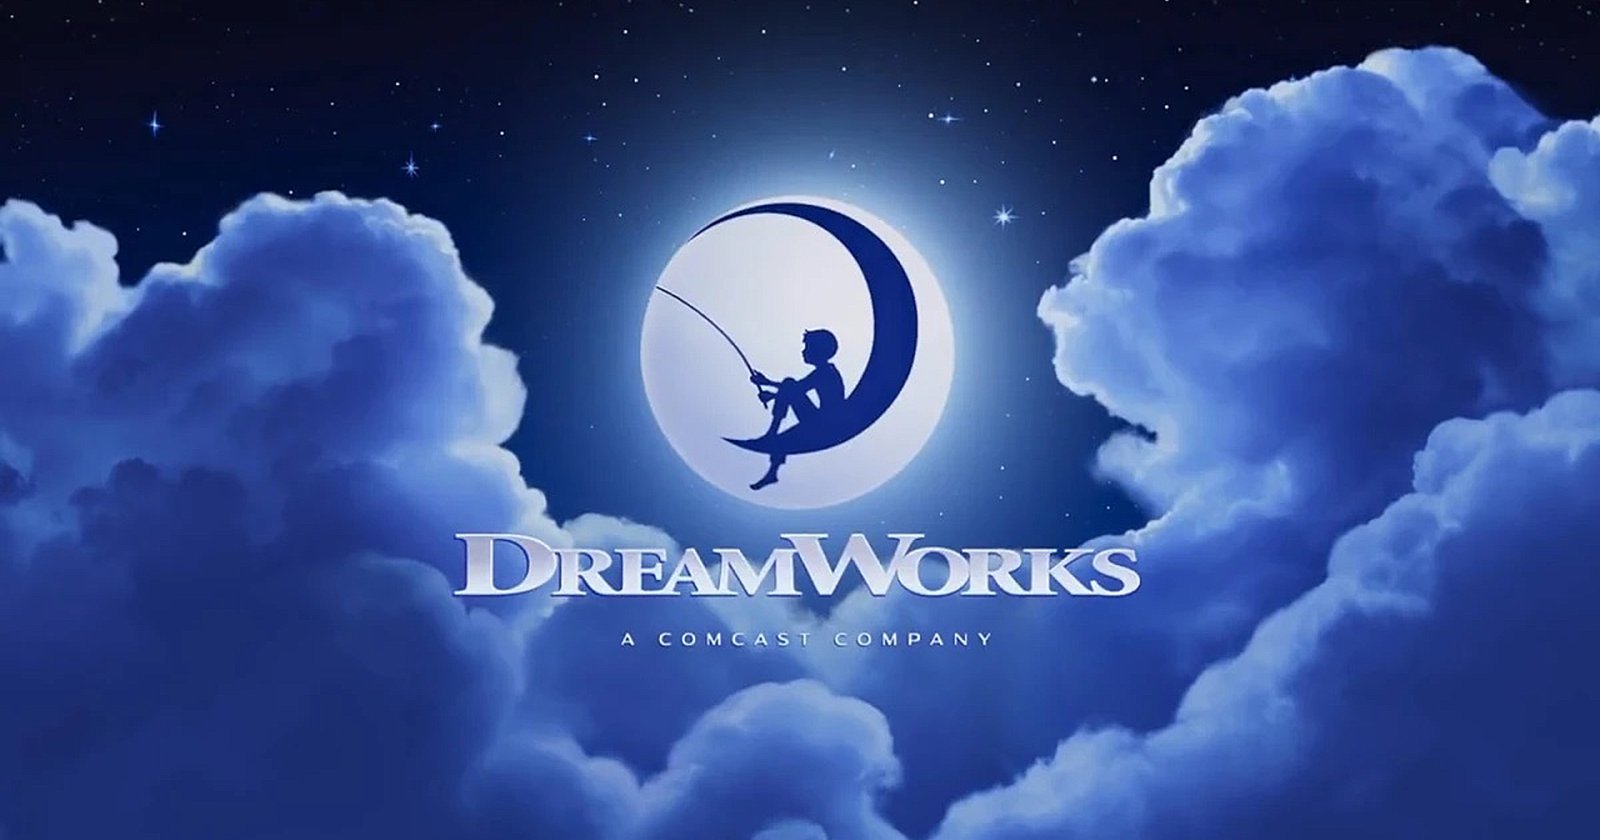 DreamWorks Animation ประสบปัญหาการเงิน ต้องปลดพนักงานอีก 4% หลังปลดไปแล้ว 70 คน